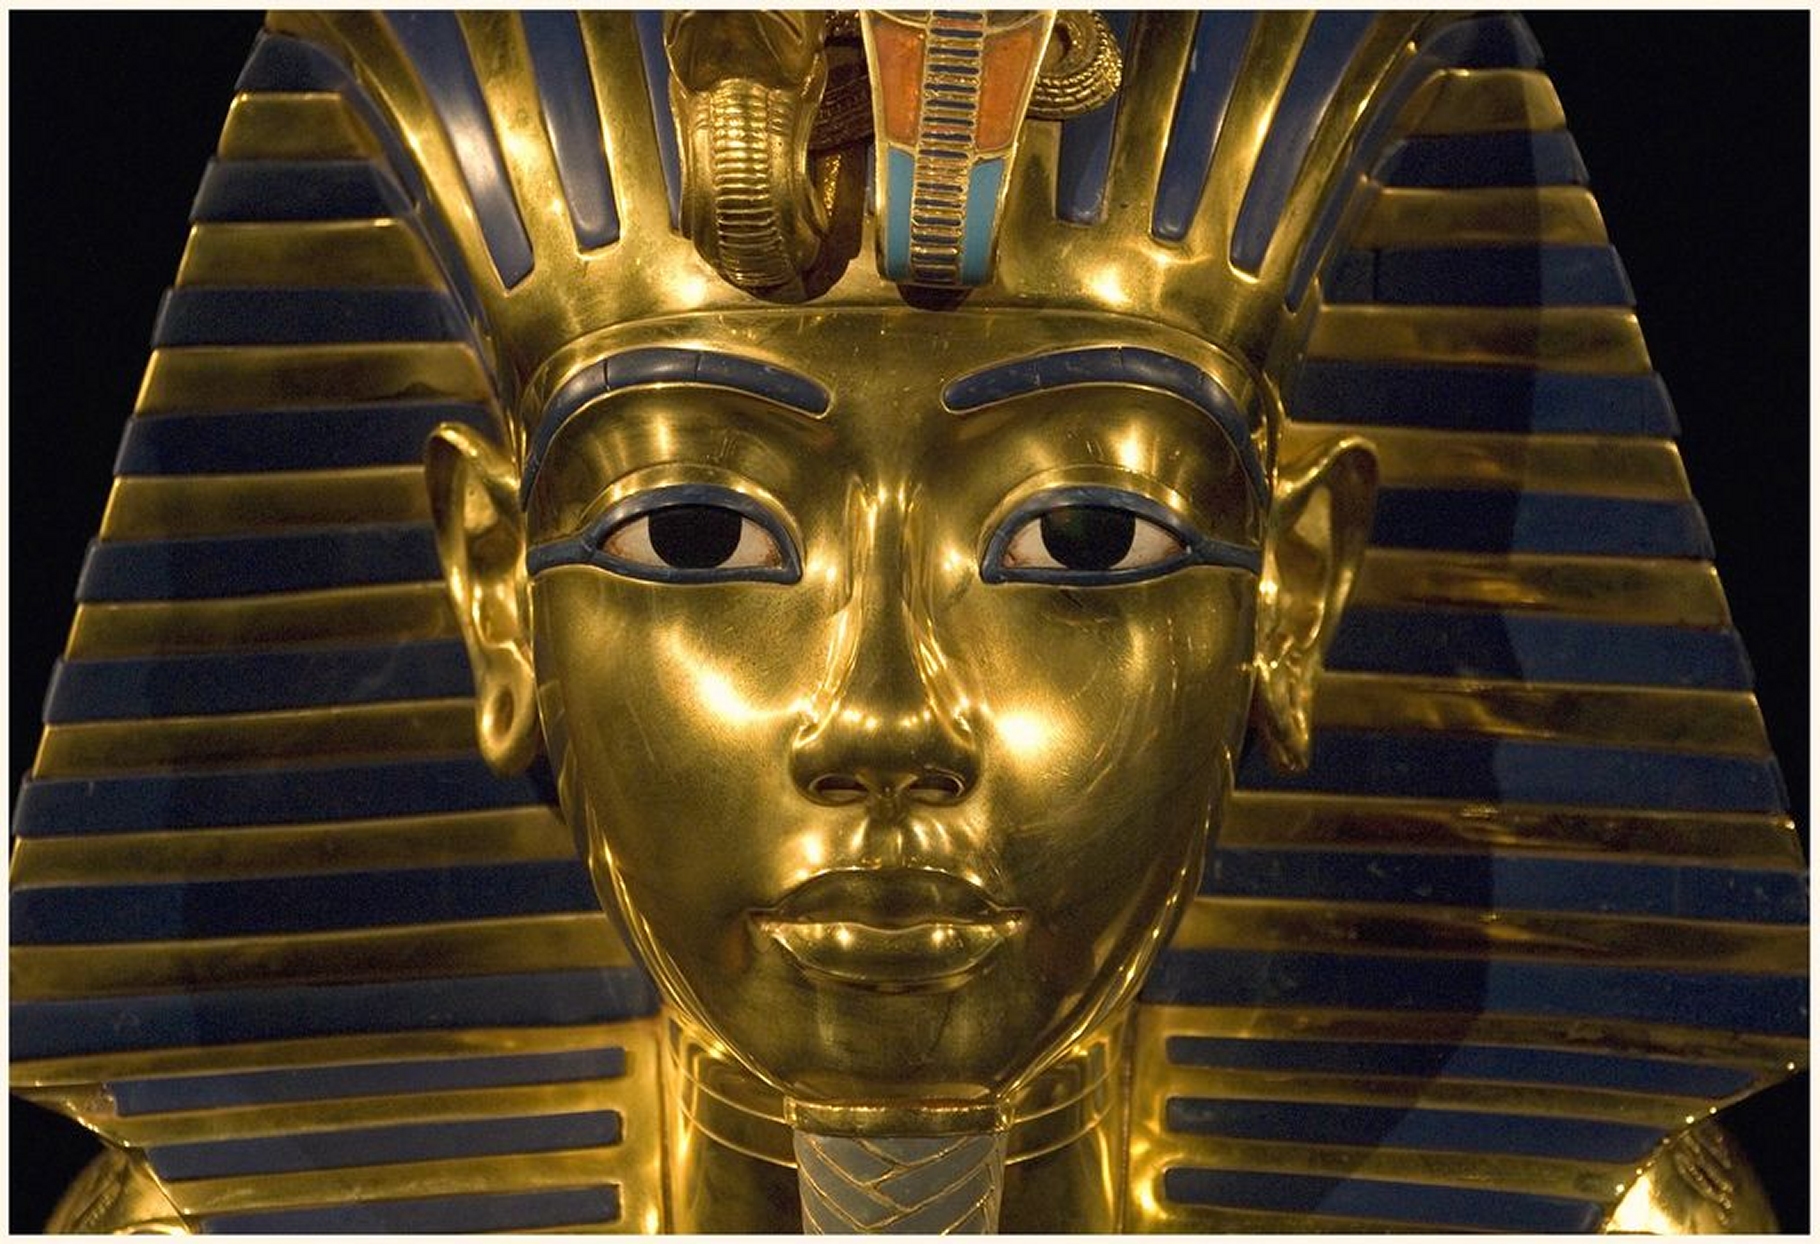 Le célèbre masque funéraire de Toutânkhamon. Enterré avec faste, le jeune pharaon mort à 19 ans a régné peu de temps et probablement sous la tutelle des prêtres. Son tombeau semble receler une chambre murée. Selon un ancien&nbsp;ministre égyptien,&nbsp;elle renfermerait&nbsp;« un trésor ». © Harry Potts, Flickr, CC by-sa 2.0